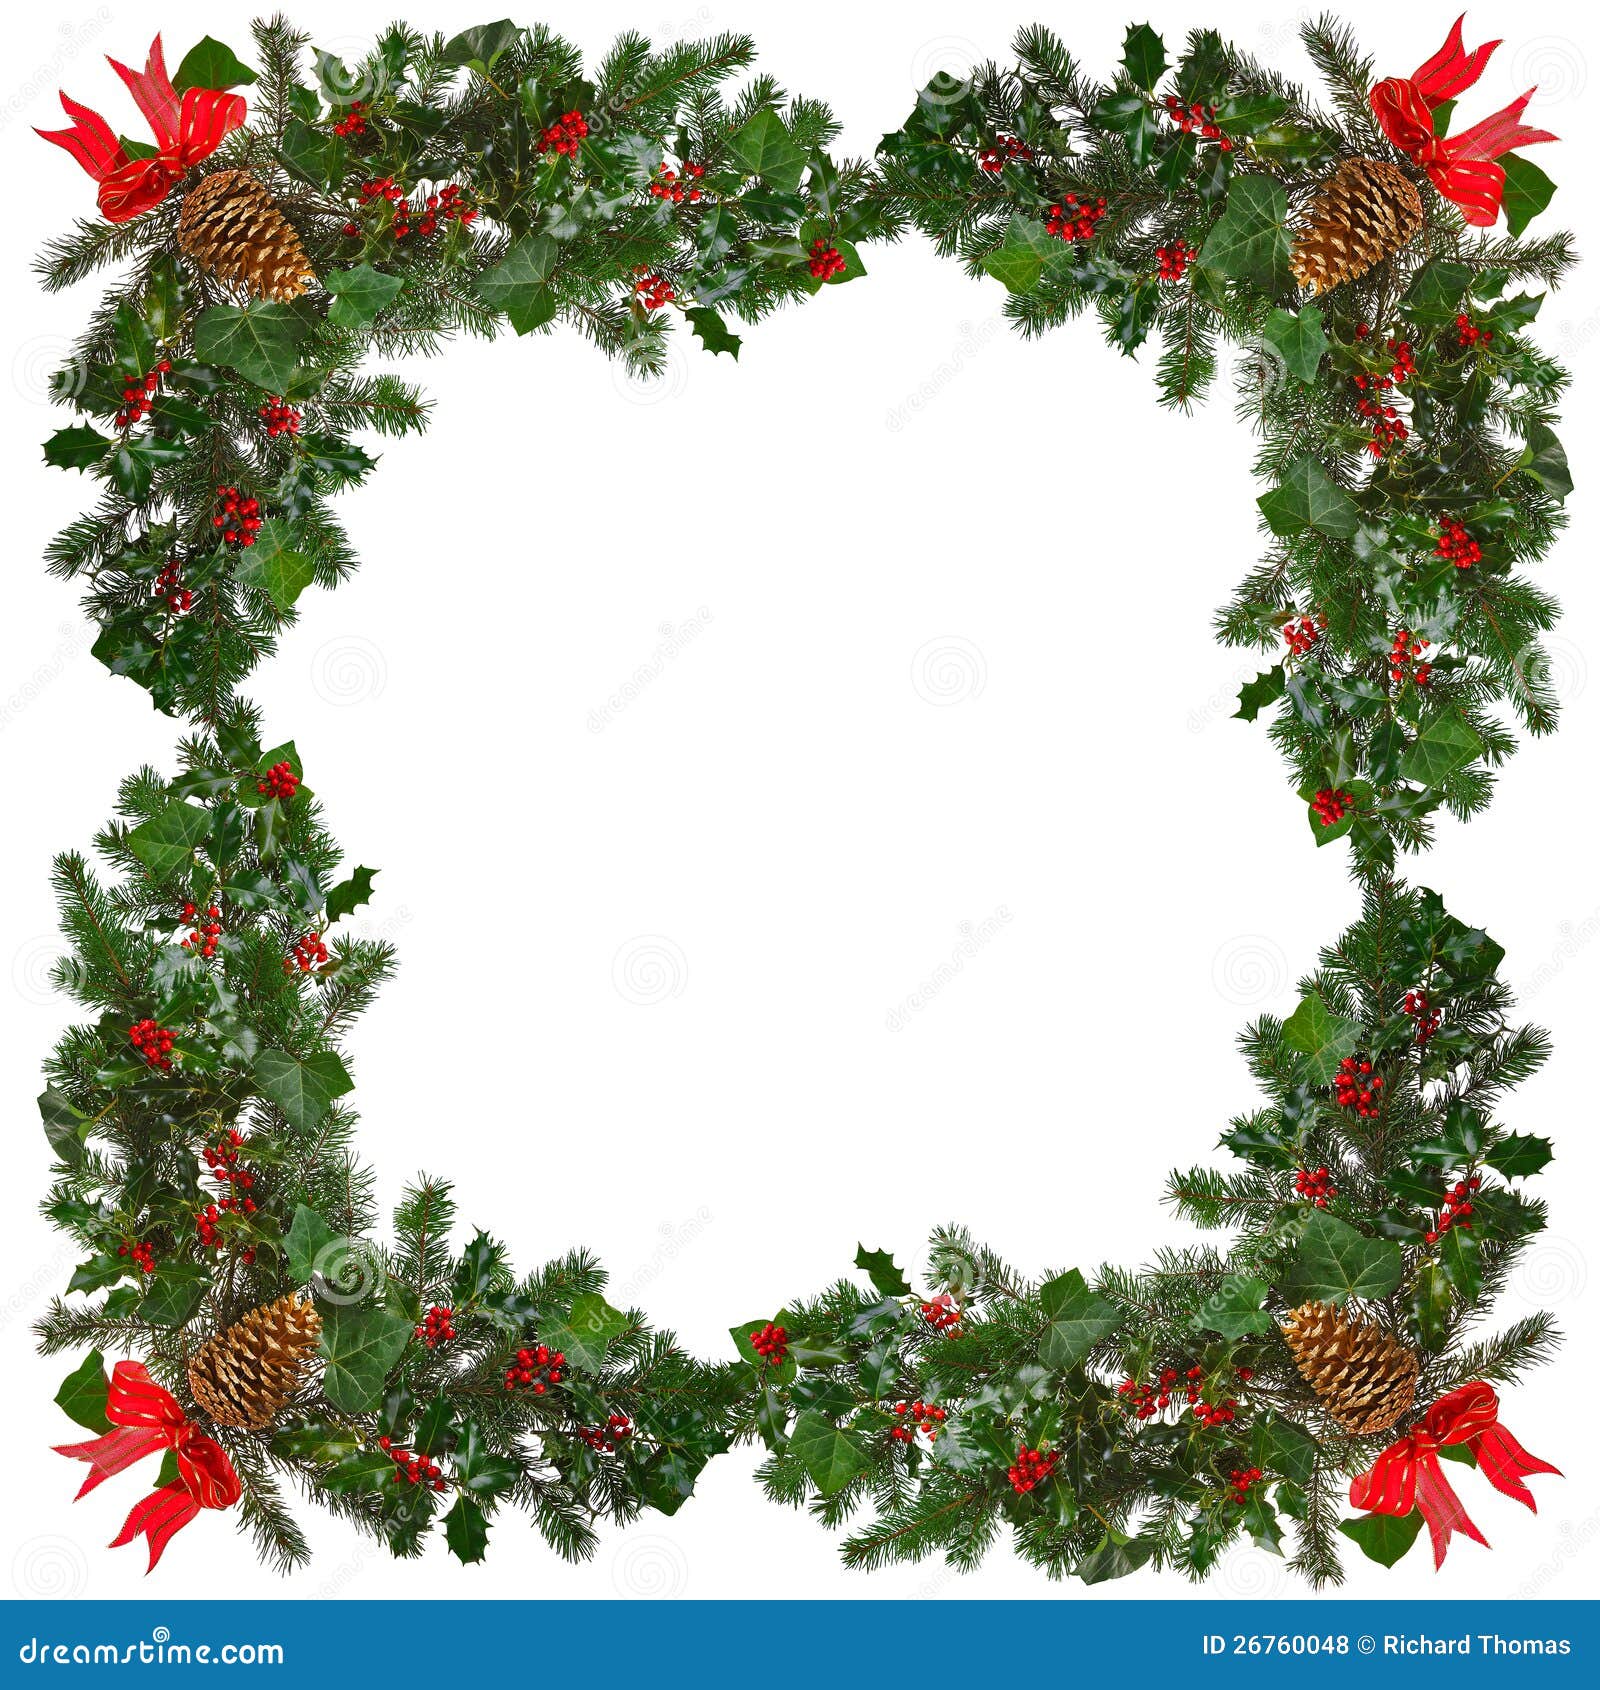 clipart christmas wreath border - photo #44